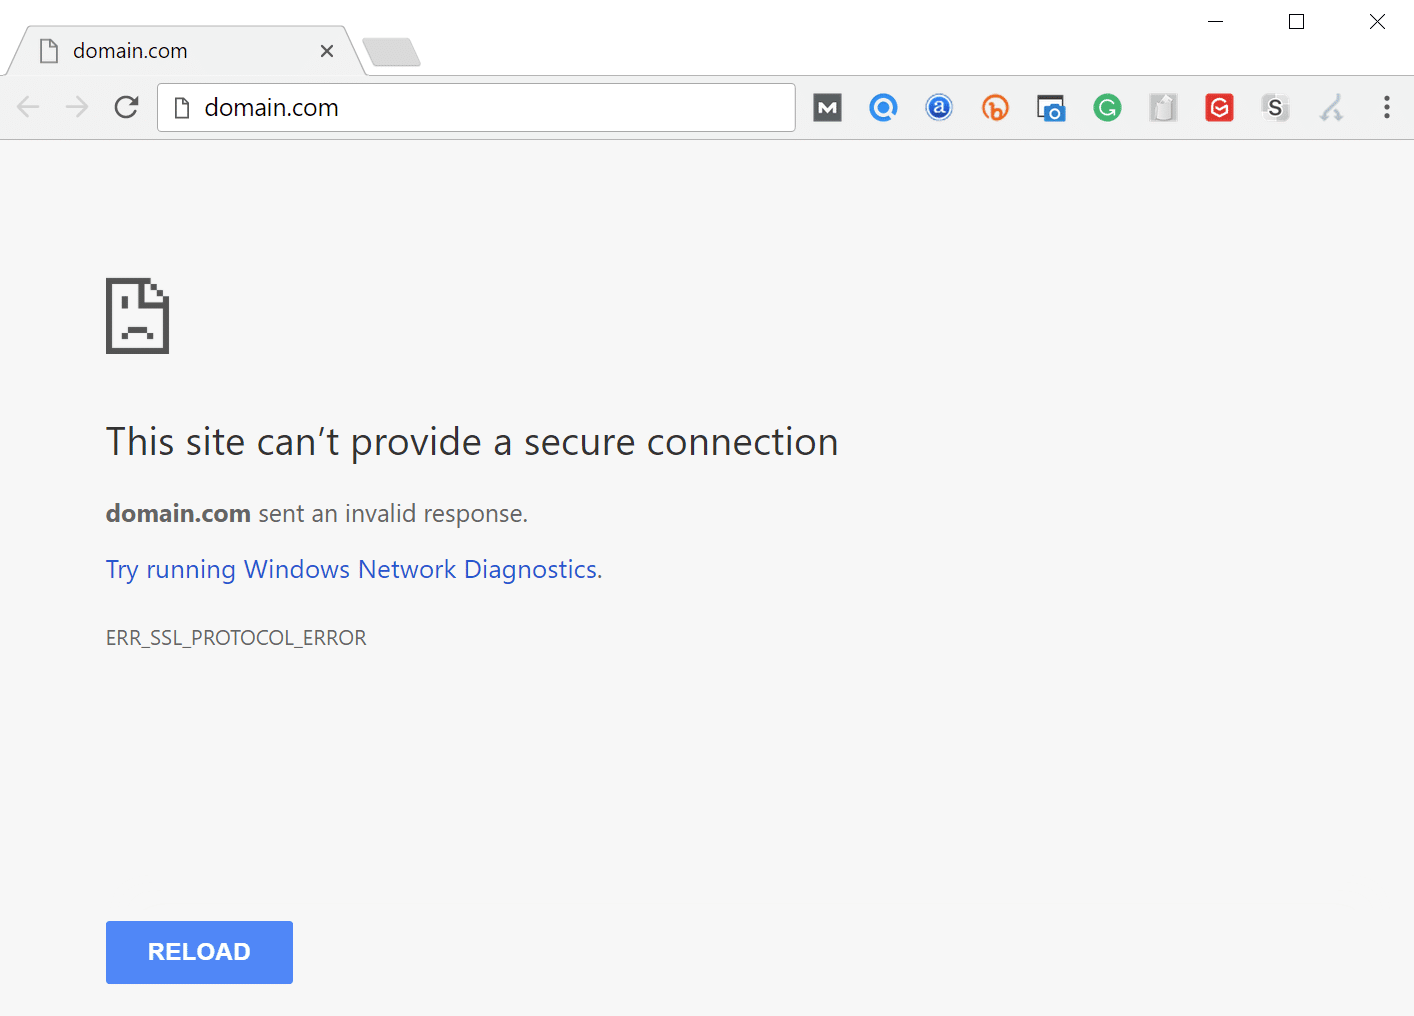 ERR_SSL_PROTOCOL_ERROR in Chrome